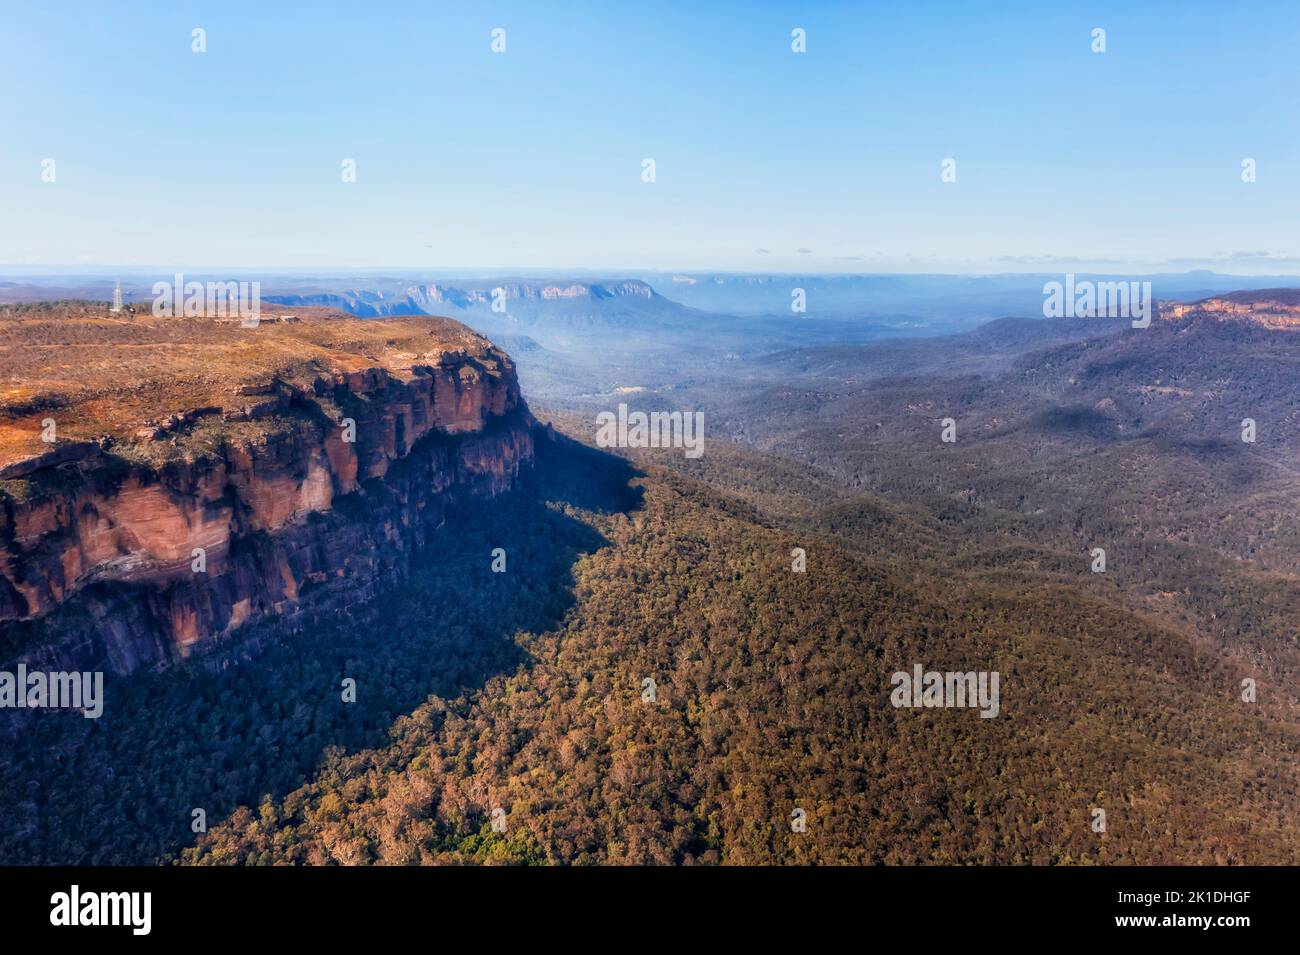 Felskanten von Sandsteinfelsen im Blue Mountain National Park von Australien - Luftlandschaft. Stockfoto